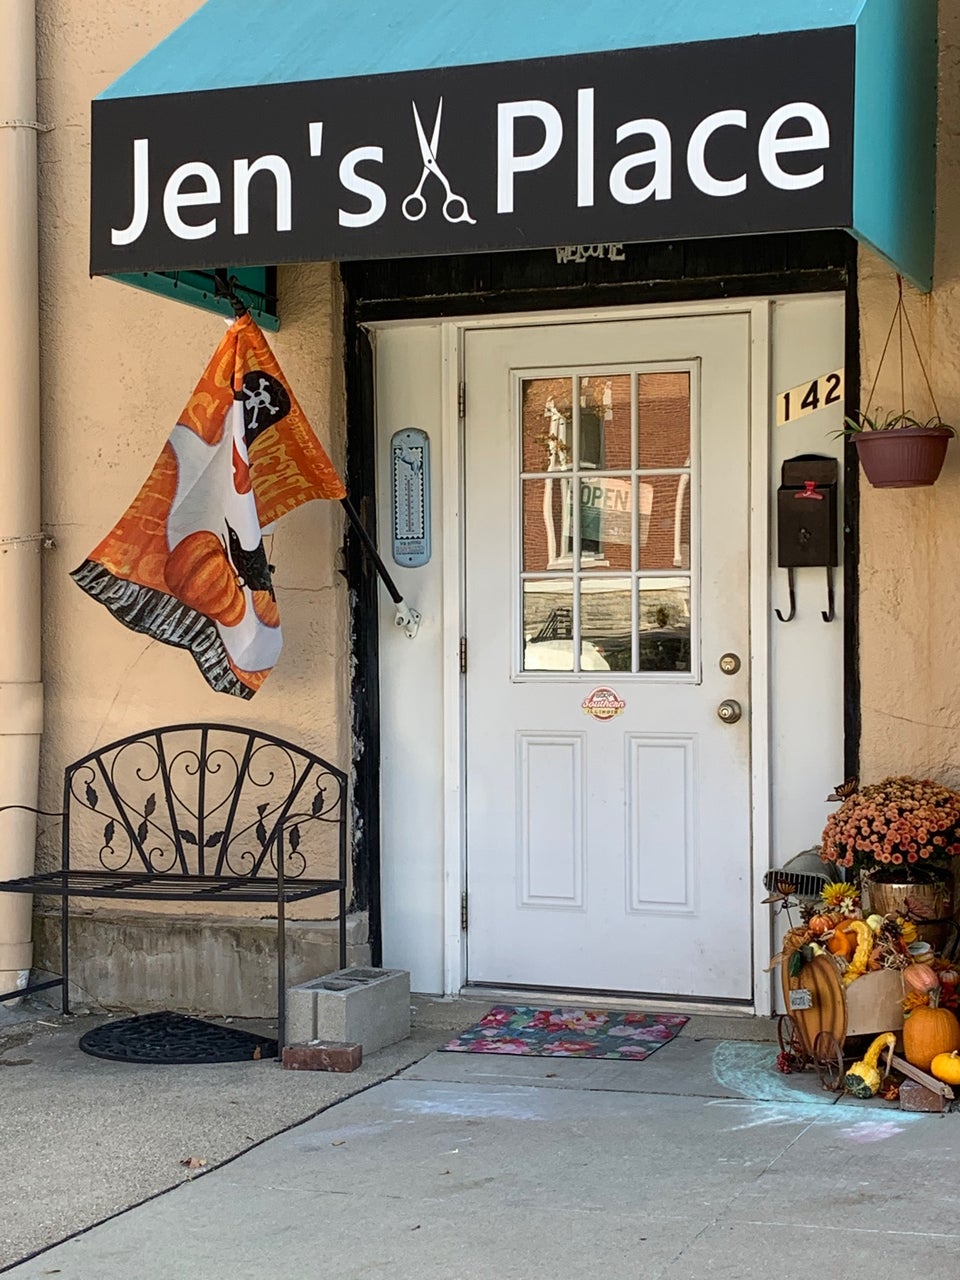 Jen's Place